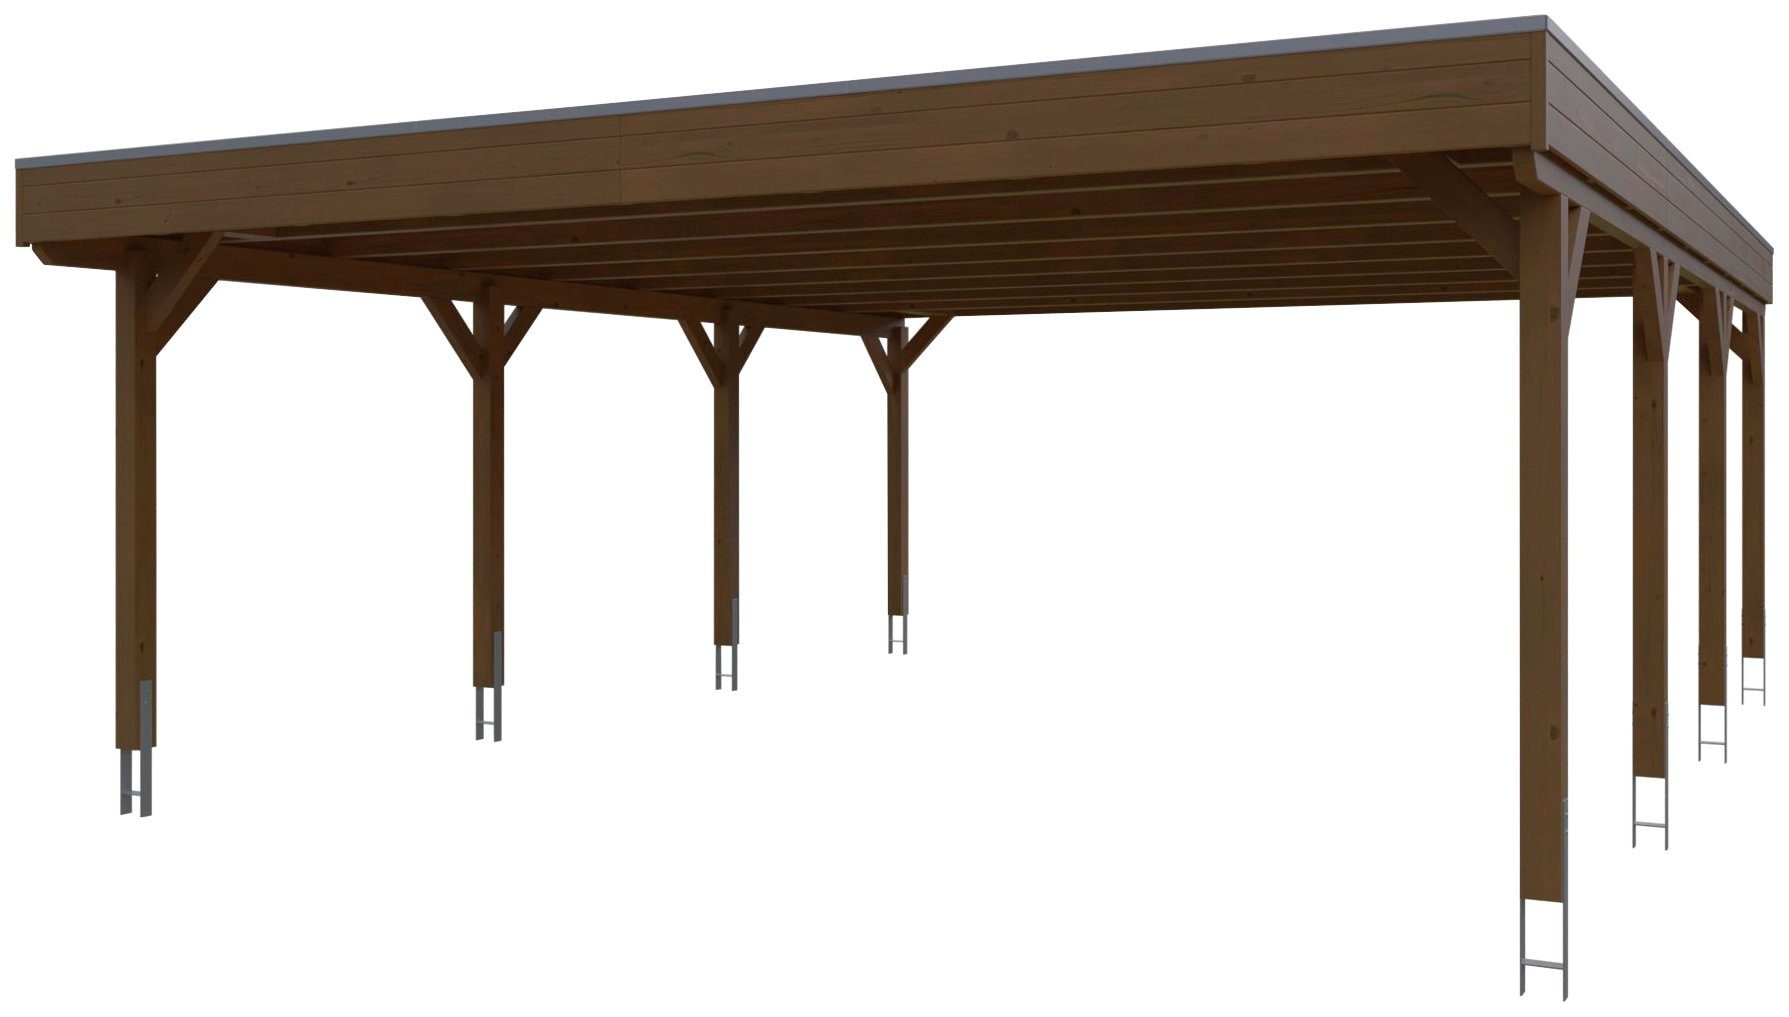 Doppelcarport cm mit 590 nussbaum Aluminium-Dachplatten, in behandelt cm, Aluminiumdach, Skanholz mit Grunewald, BxT: 622x796 Flachdach farblich Einfahrtshöhe,